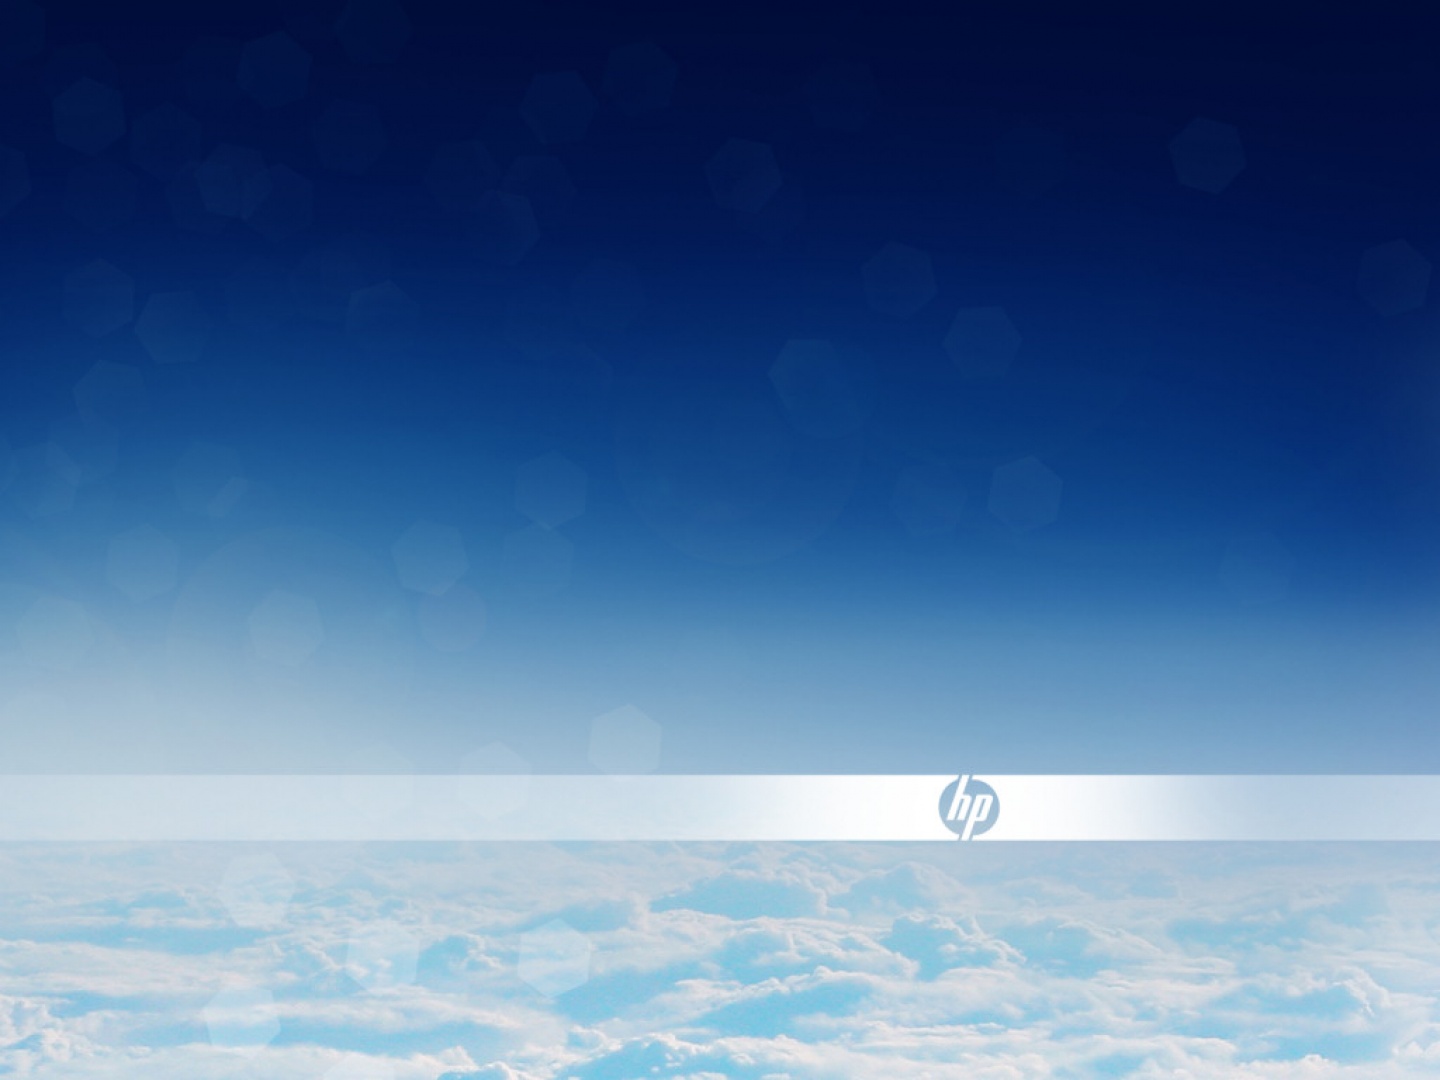 Hewlett Packard Logo In De Wolken